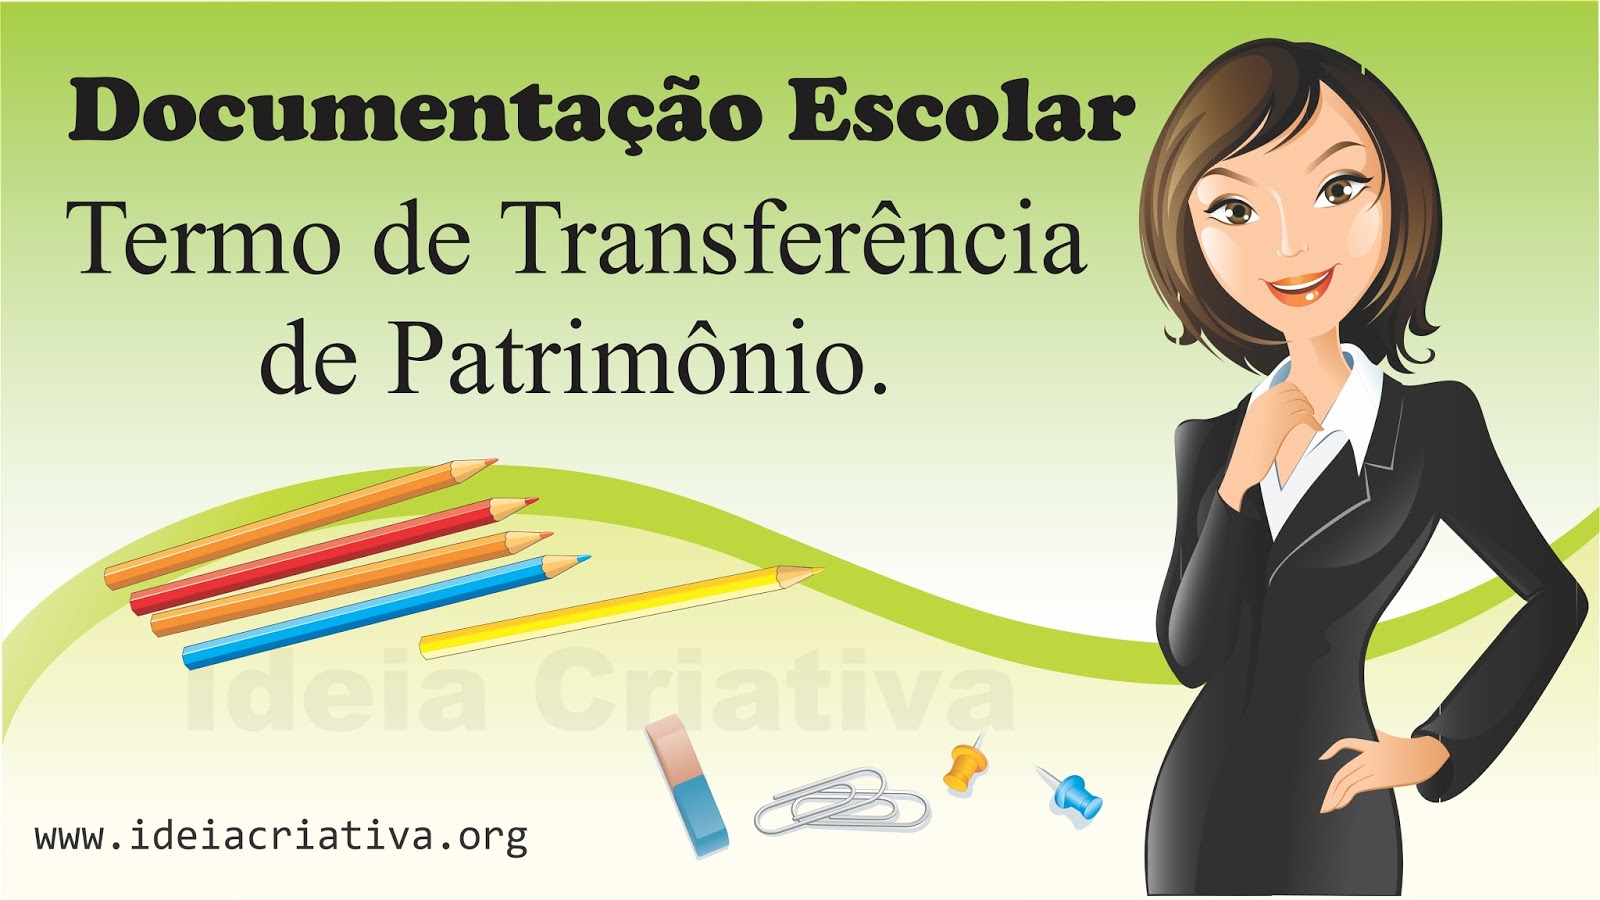 Termo de Transferência de Patrimônio Documentação Escolar.